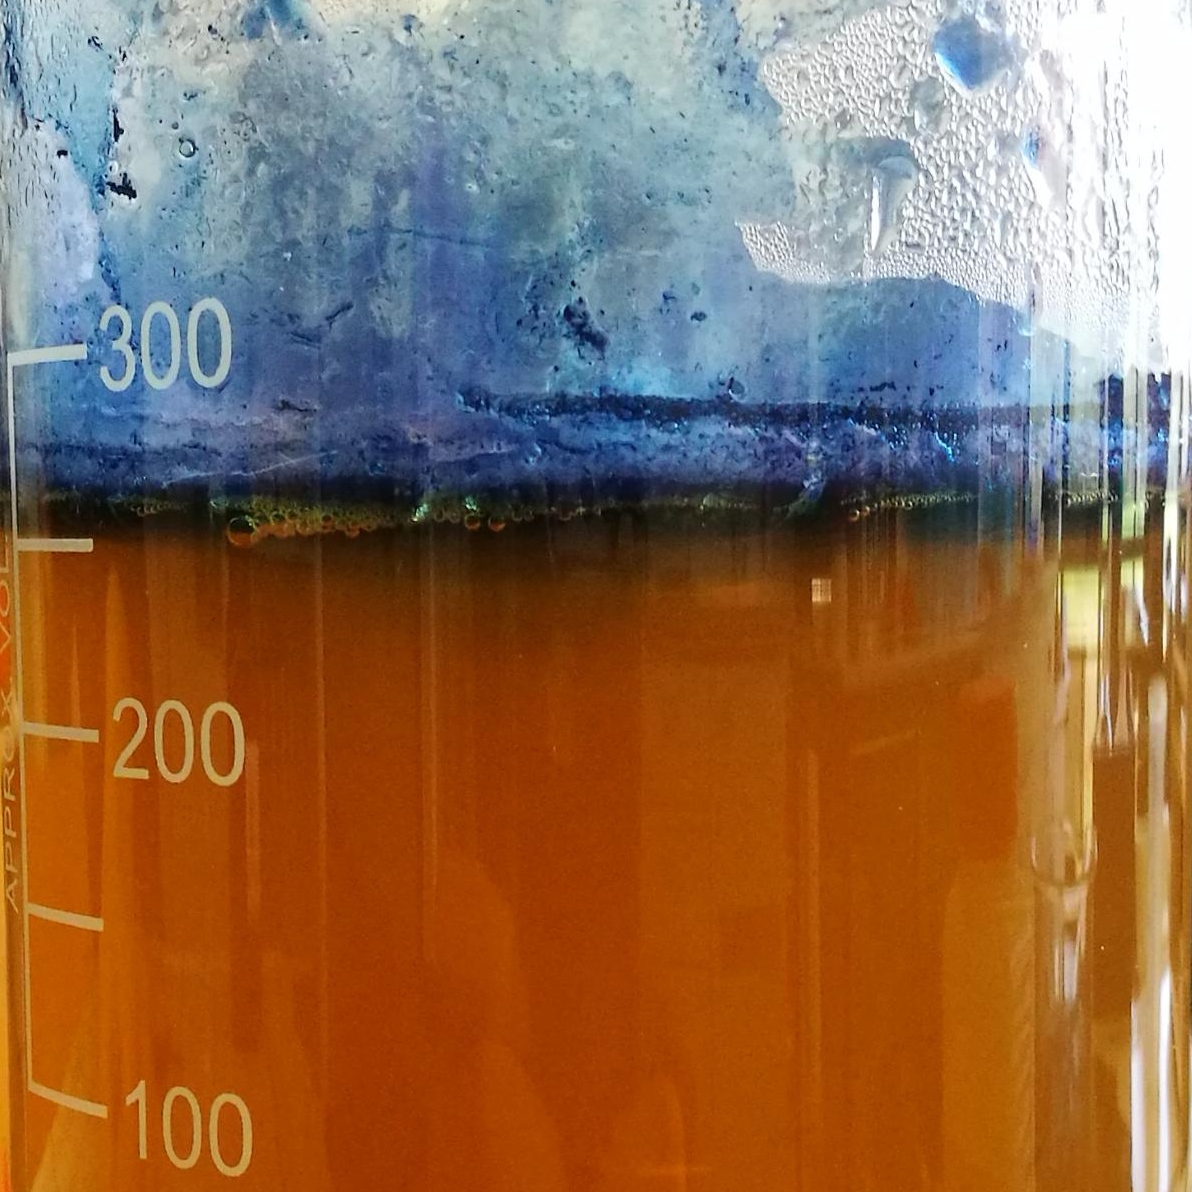 Bild aus dem Chemischen Fotokalender: Glas mit orangebrauner Flüssigkeit und hellblauem Schaum